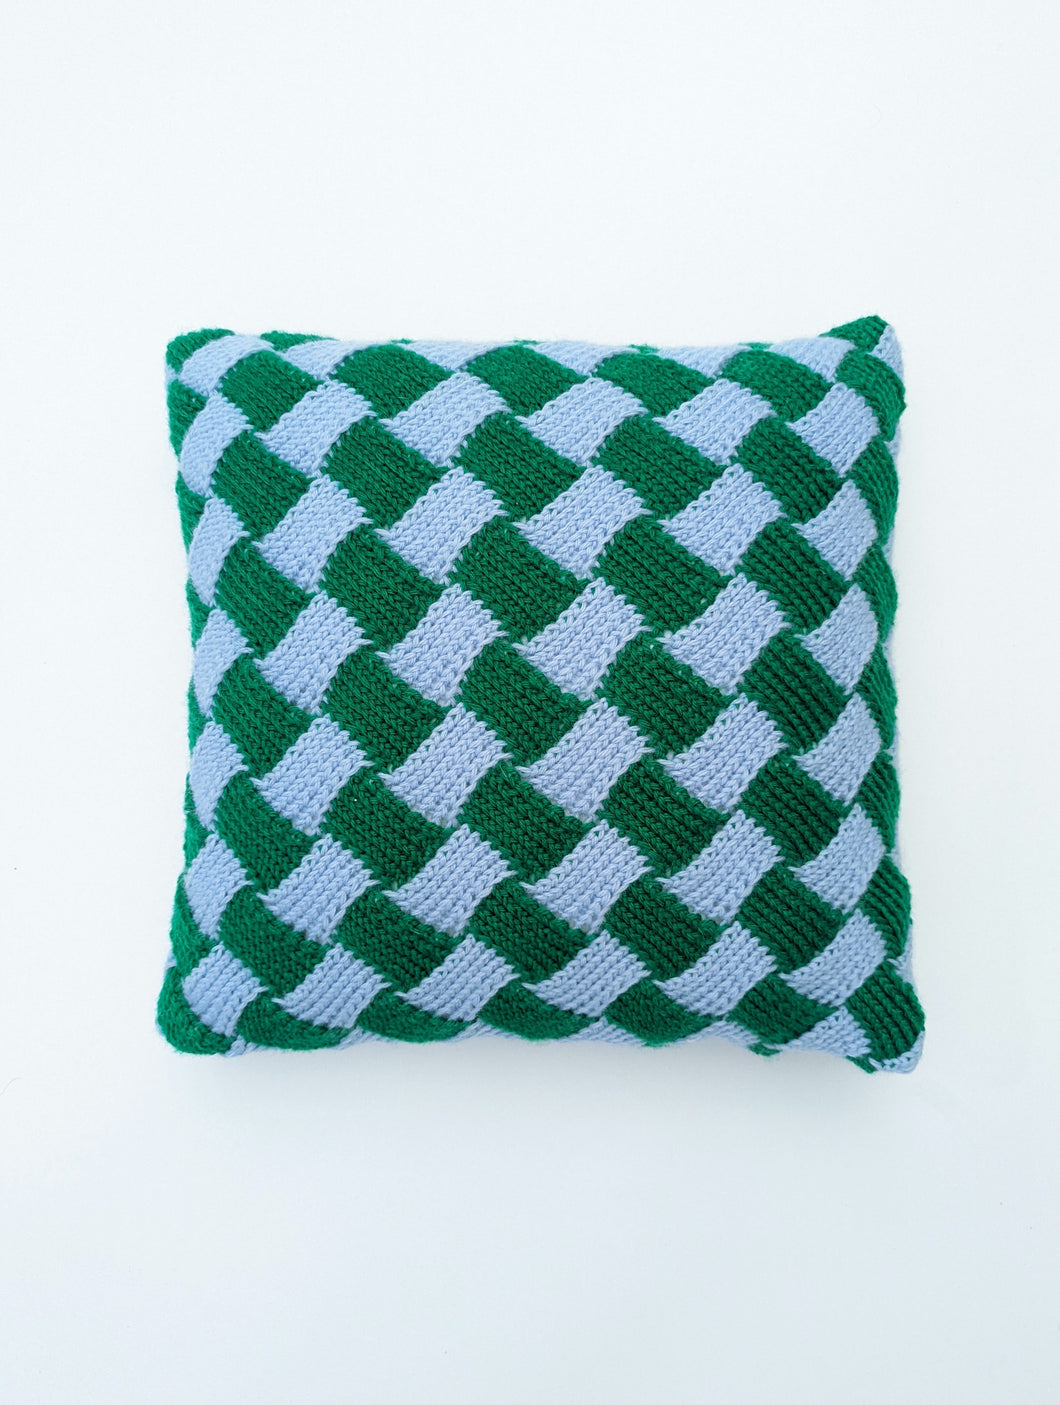 Pie Crust Hand Knit Pillow